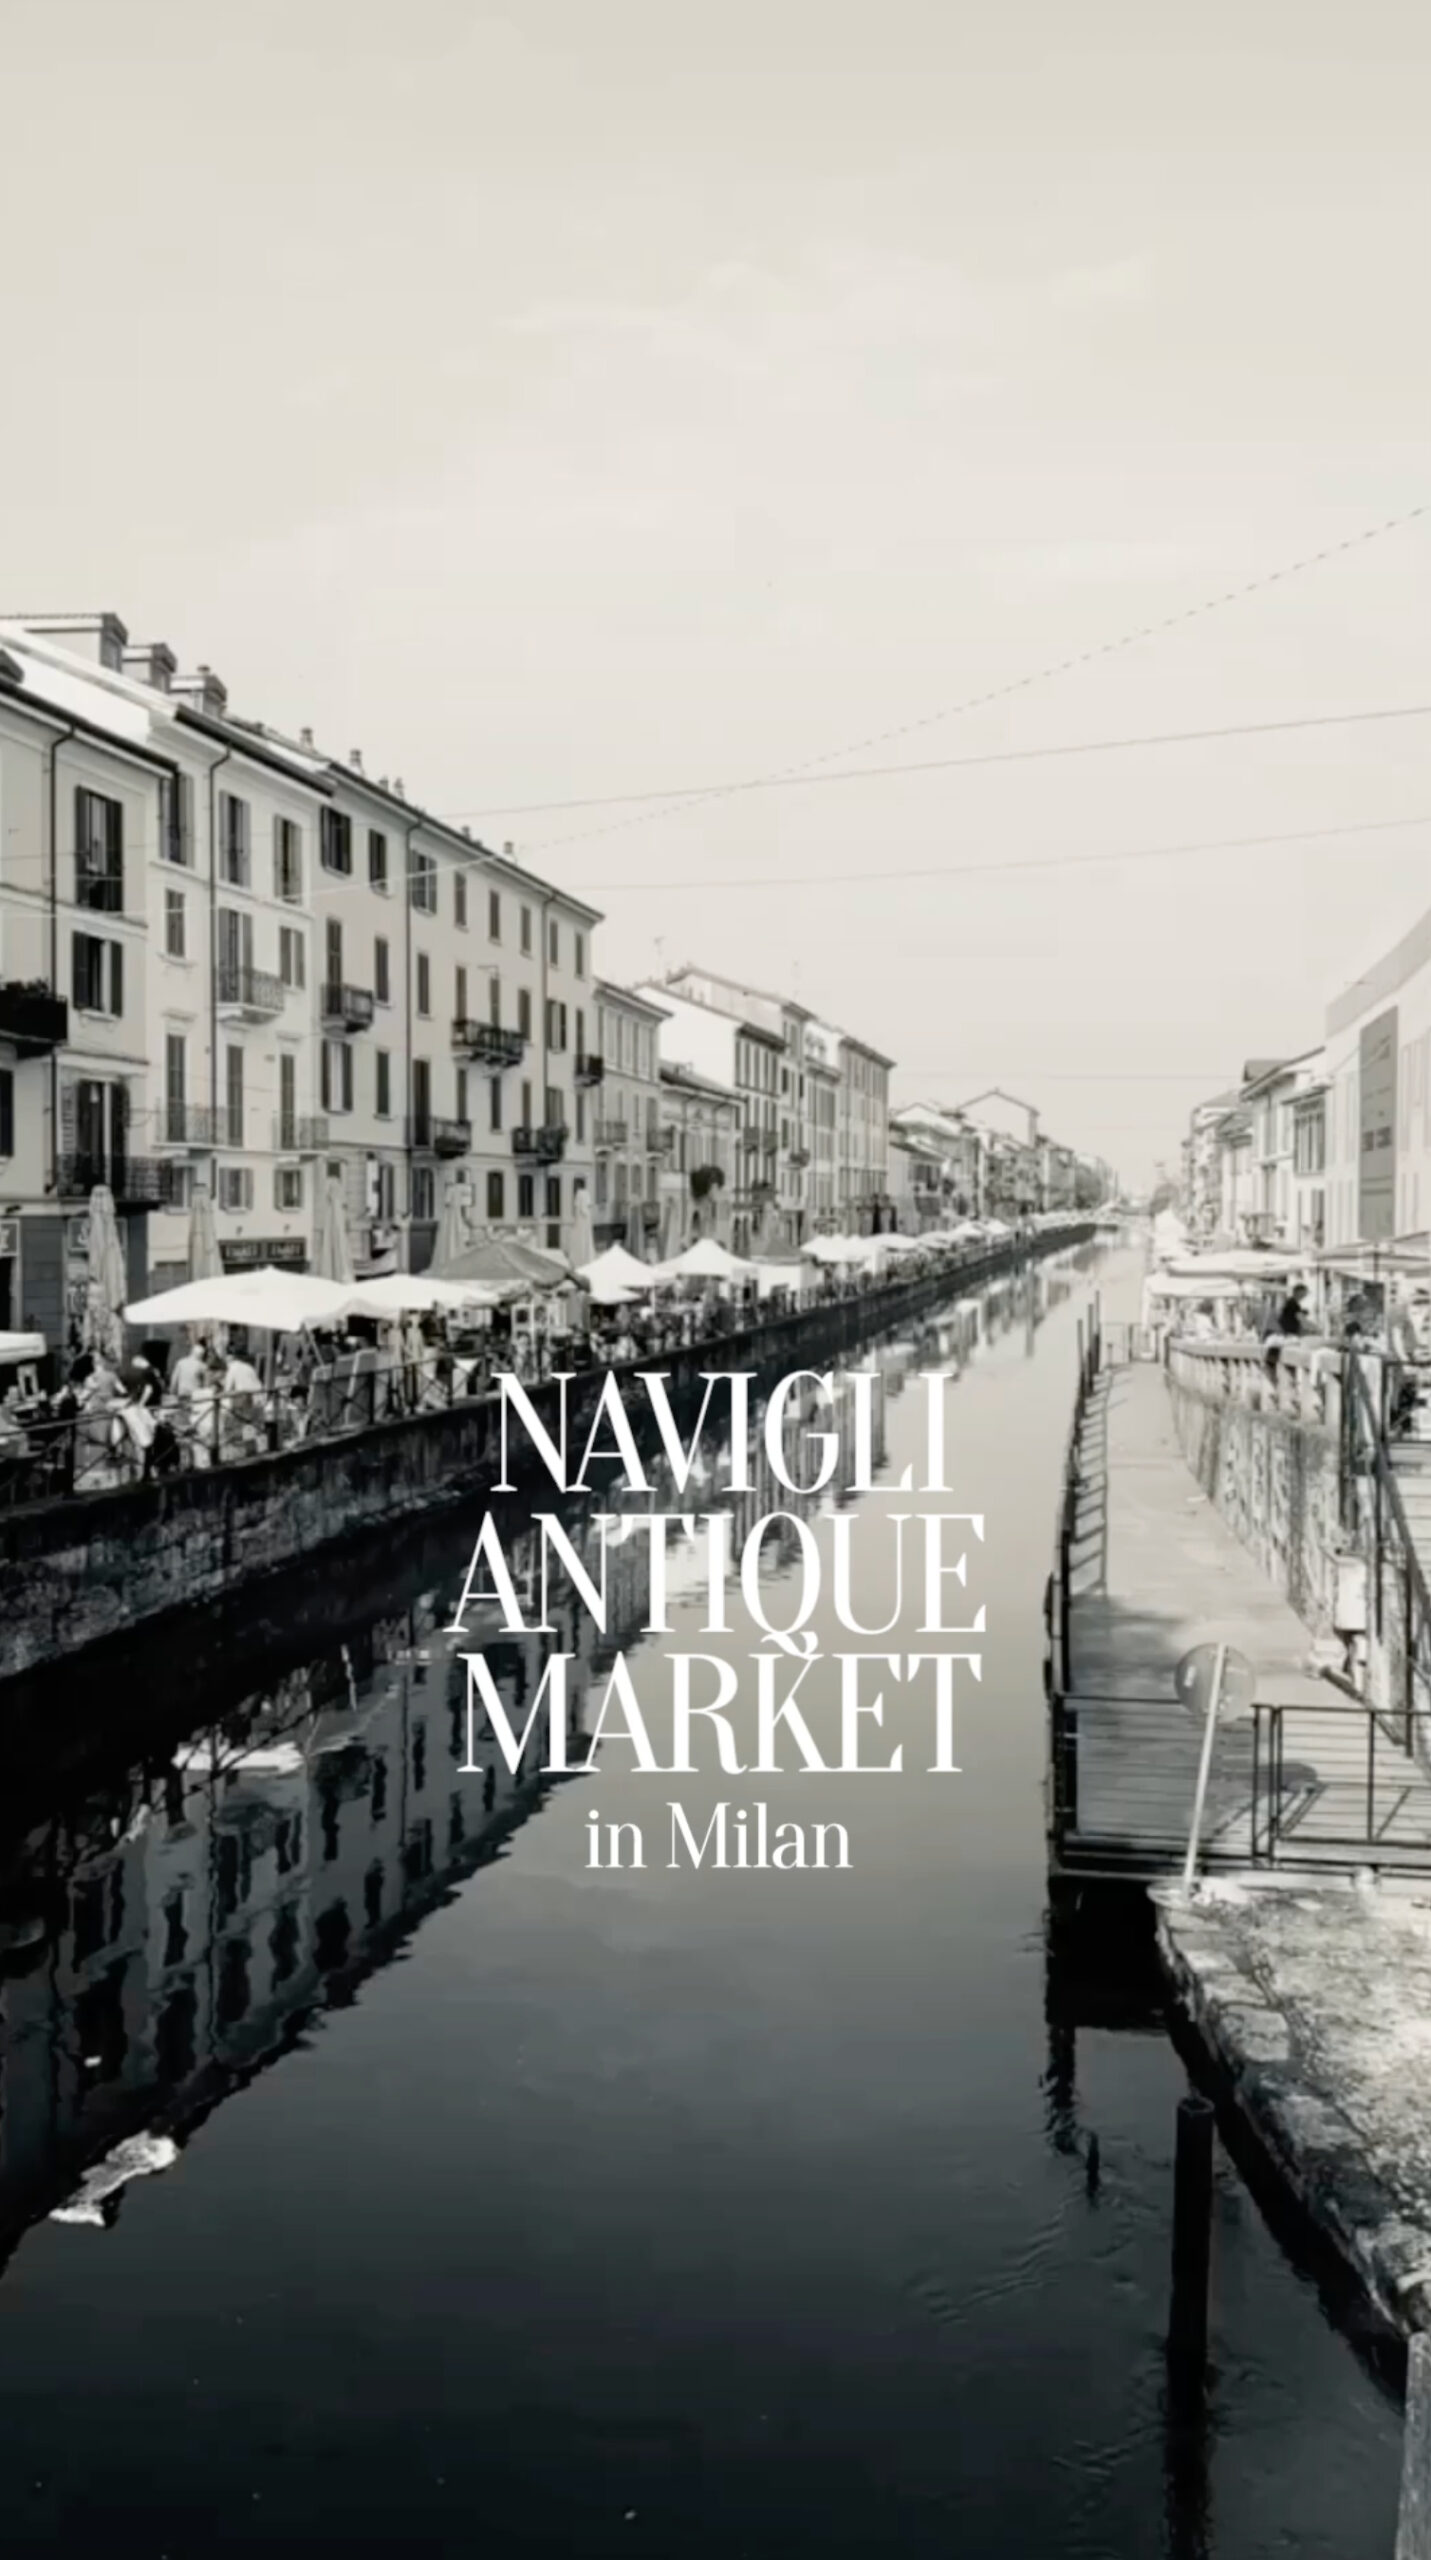 Navigli Antique Market | Antique Market in Milan